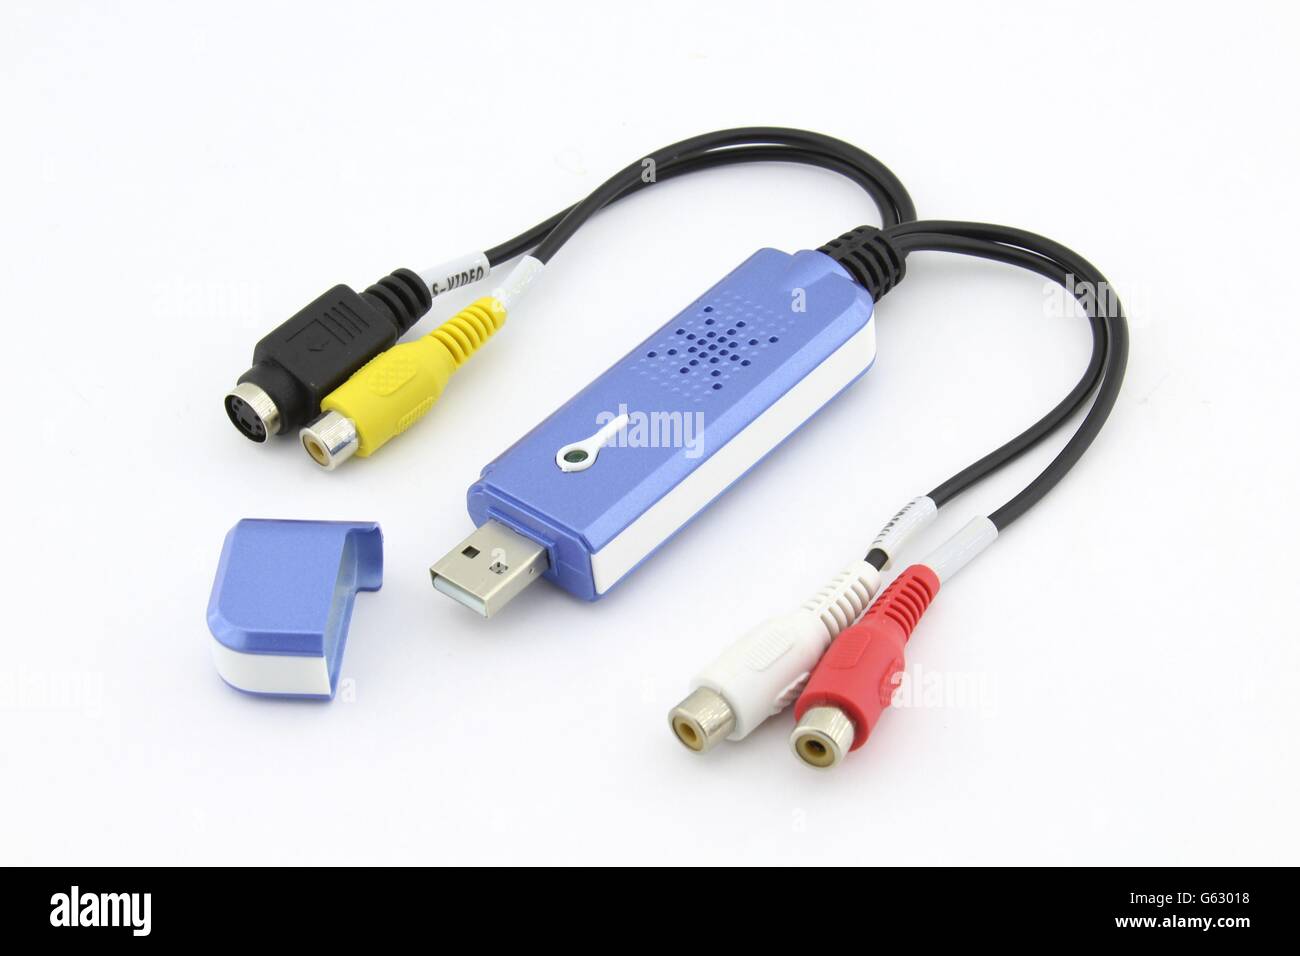 Conversor cable HDMI - VGA - Diagonales Digital